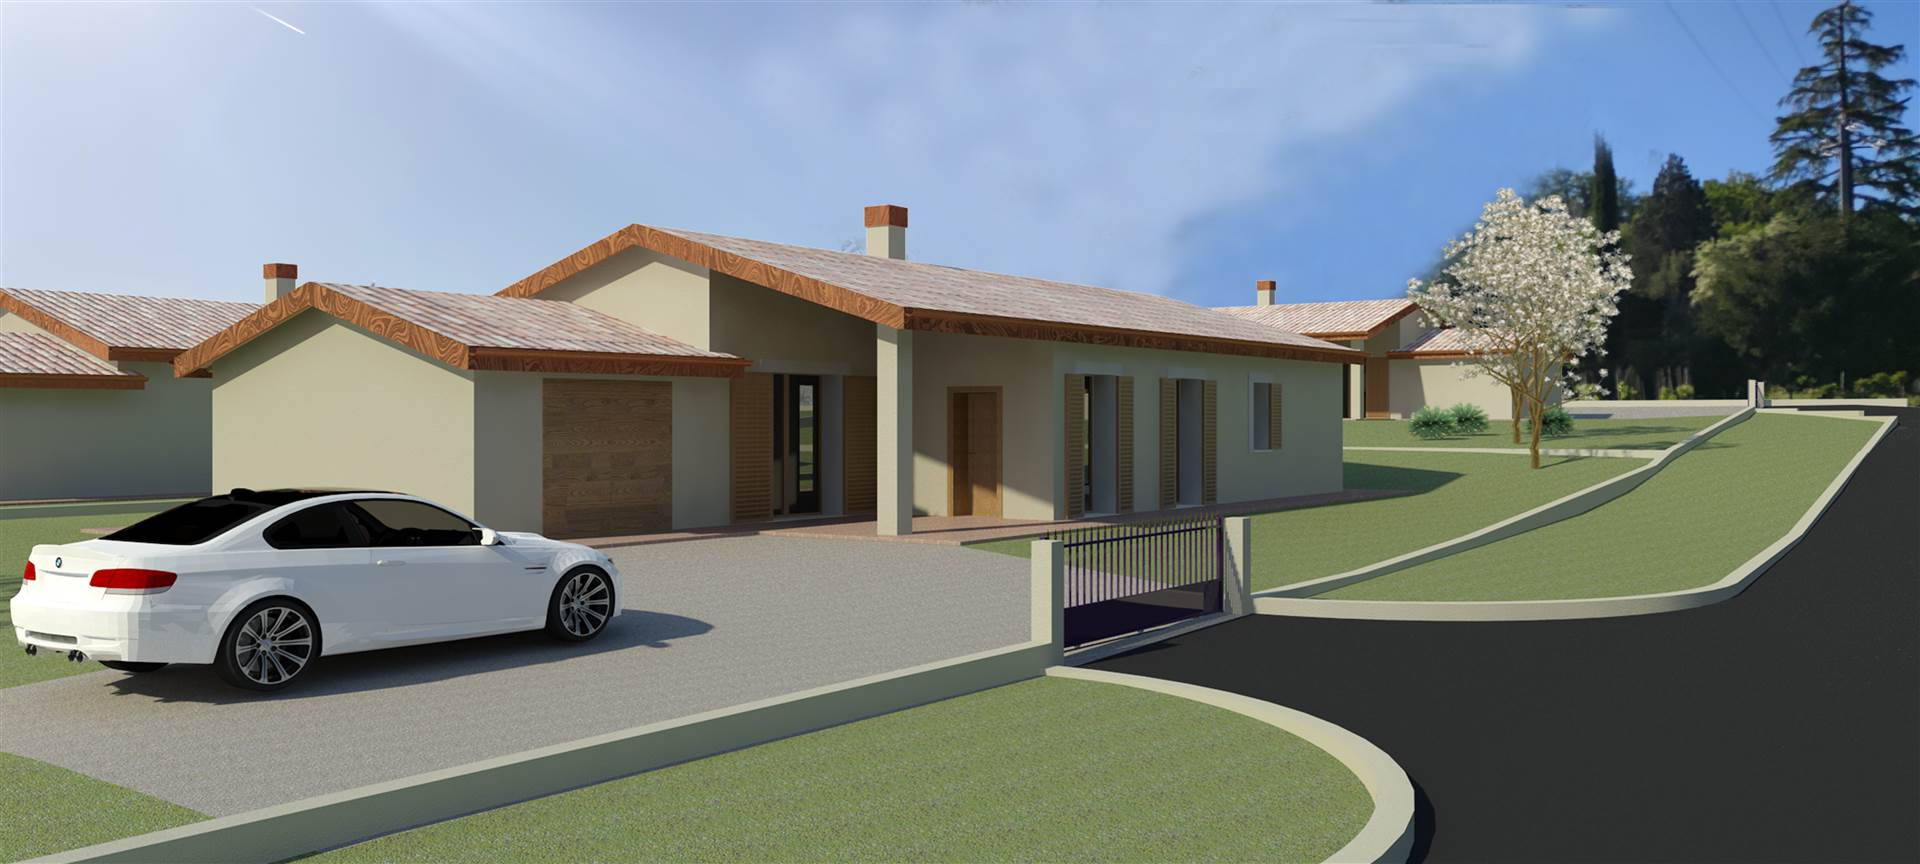 Villa in nuova costruzione in zona Semiperiferia Periferia a Terni